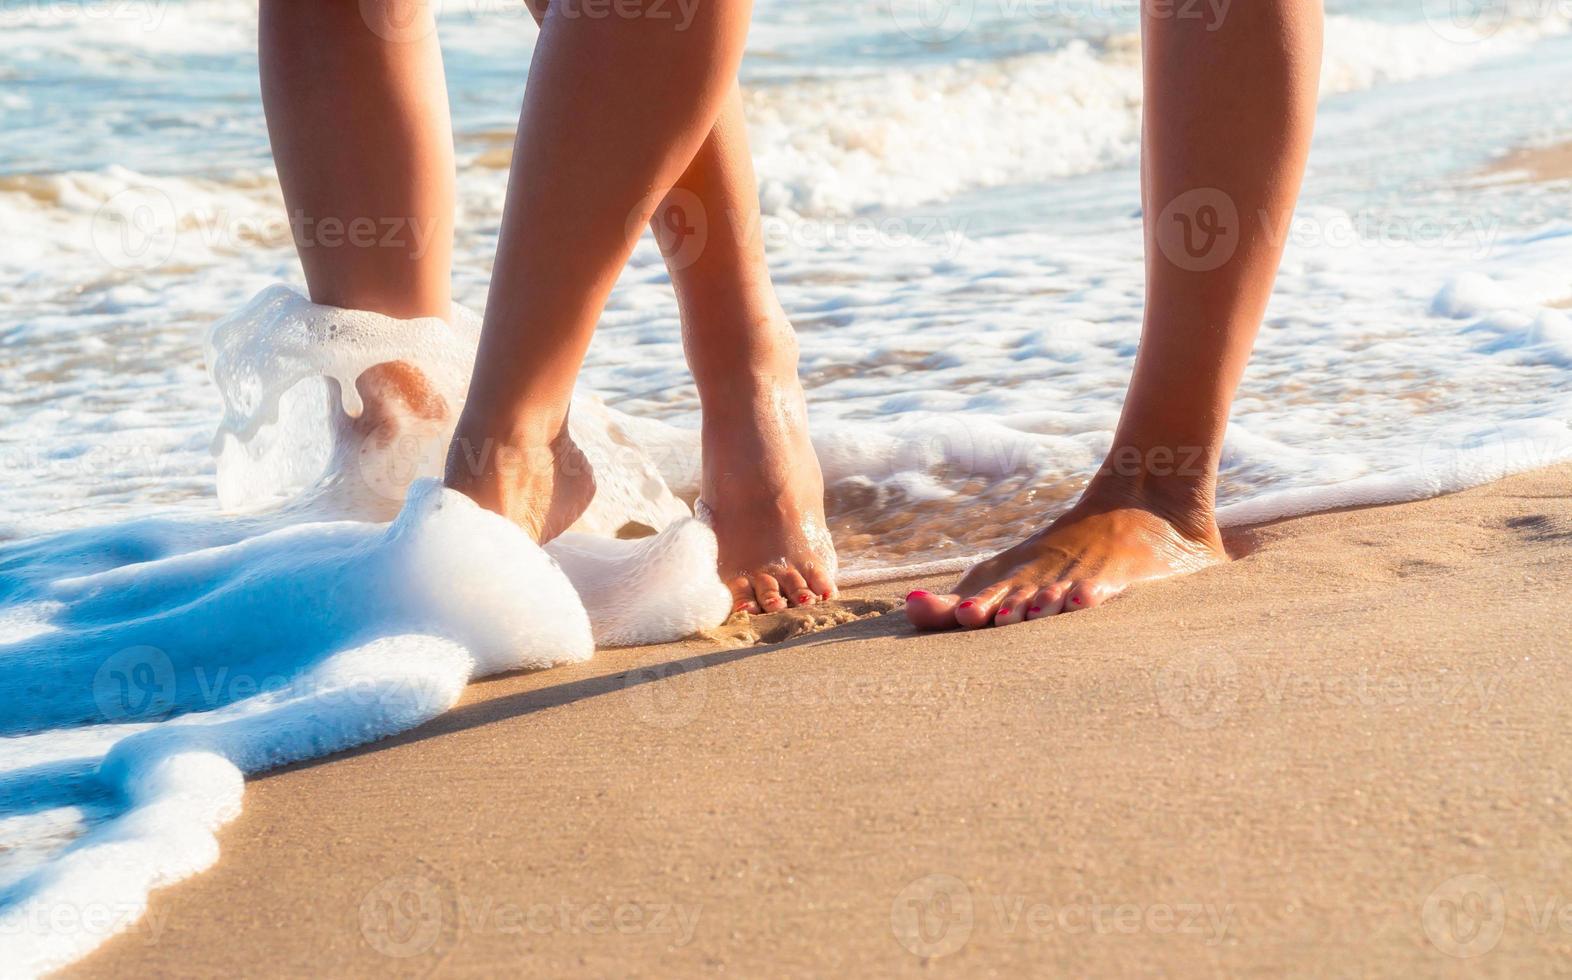 bara fötter går på stranden foto